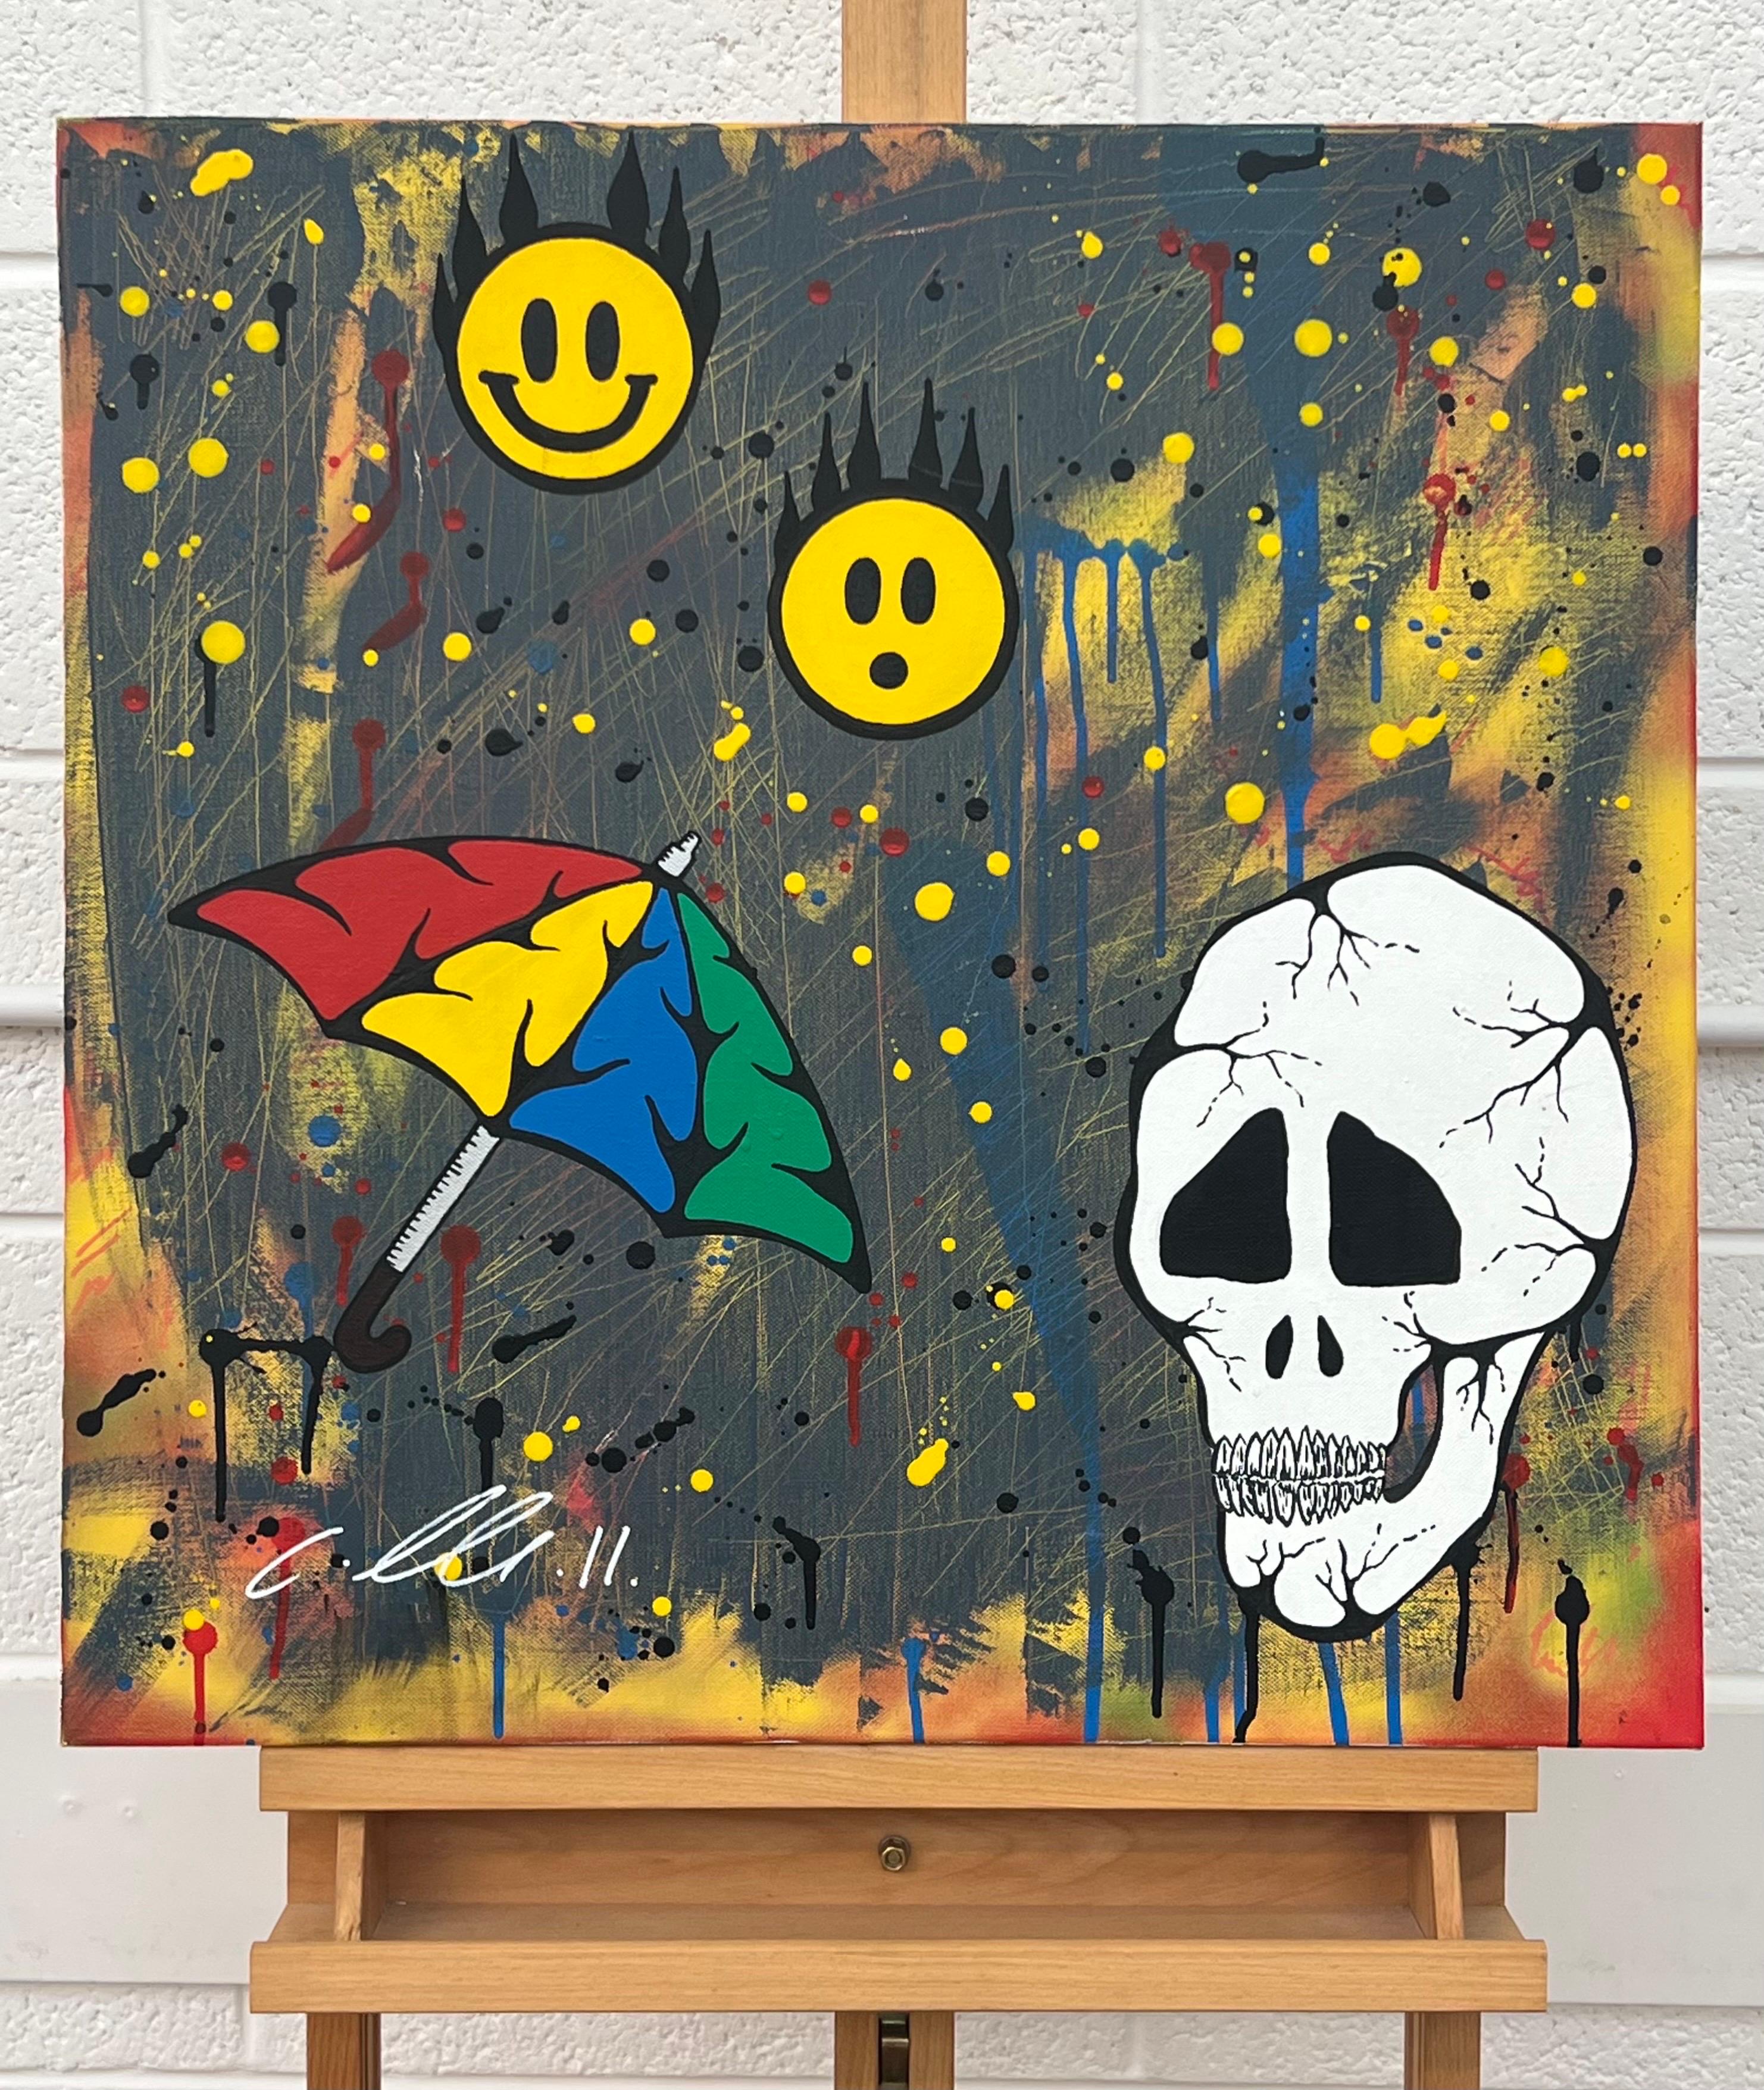 Skull & Emoji Cartoon Pop Art sur fond abstrait par l'artiste britannique de graffiti urbain, Chris Pegg. Chris Pegg est un Artiste de rue autodidacte qui produit des œuvres d'art avec un commentaire social fort. 

Son travail s'inspire d'artistes